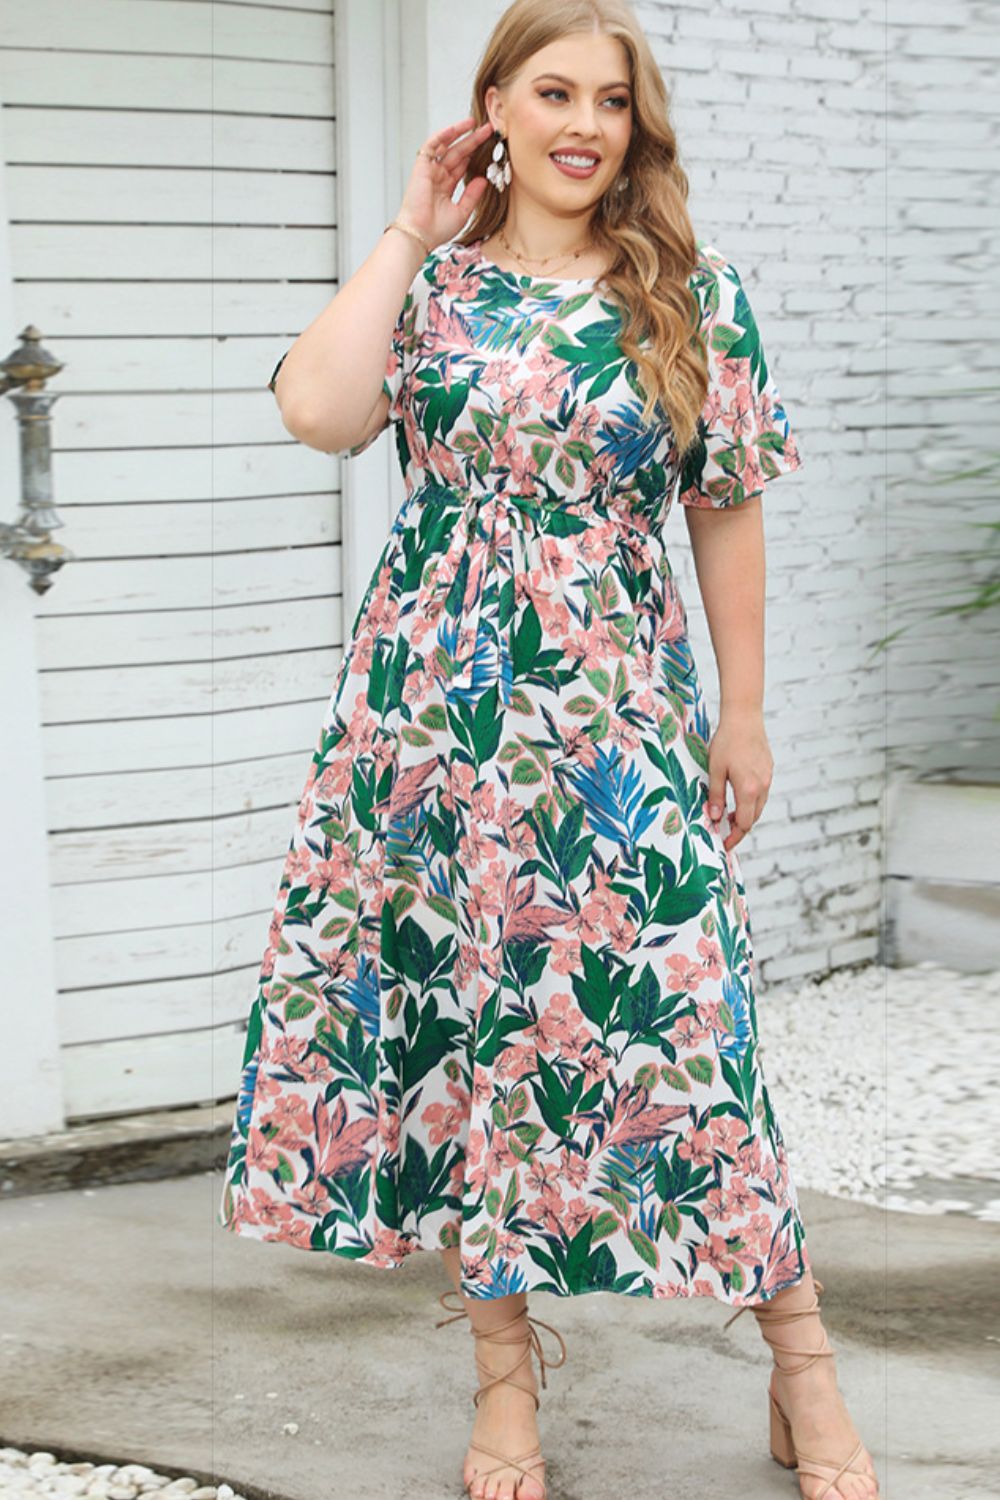 Plus Size Floral Resort & Vacation Dress, Tropical Plus Size Dress